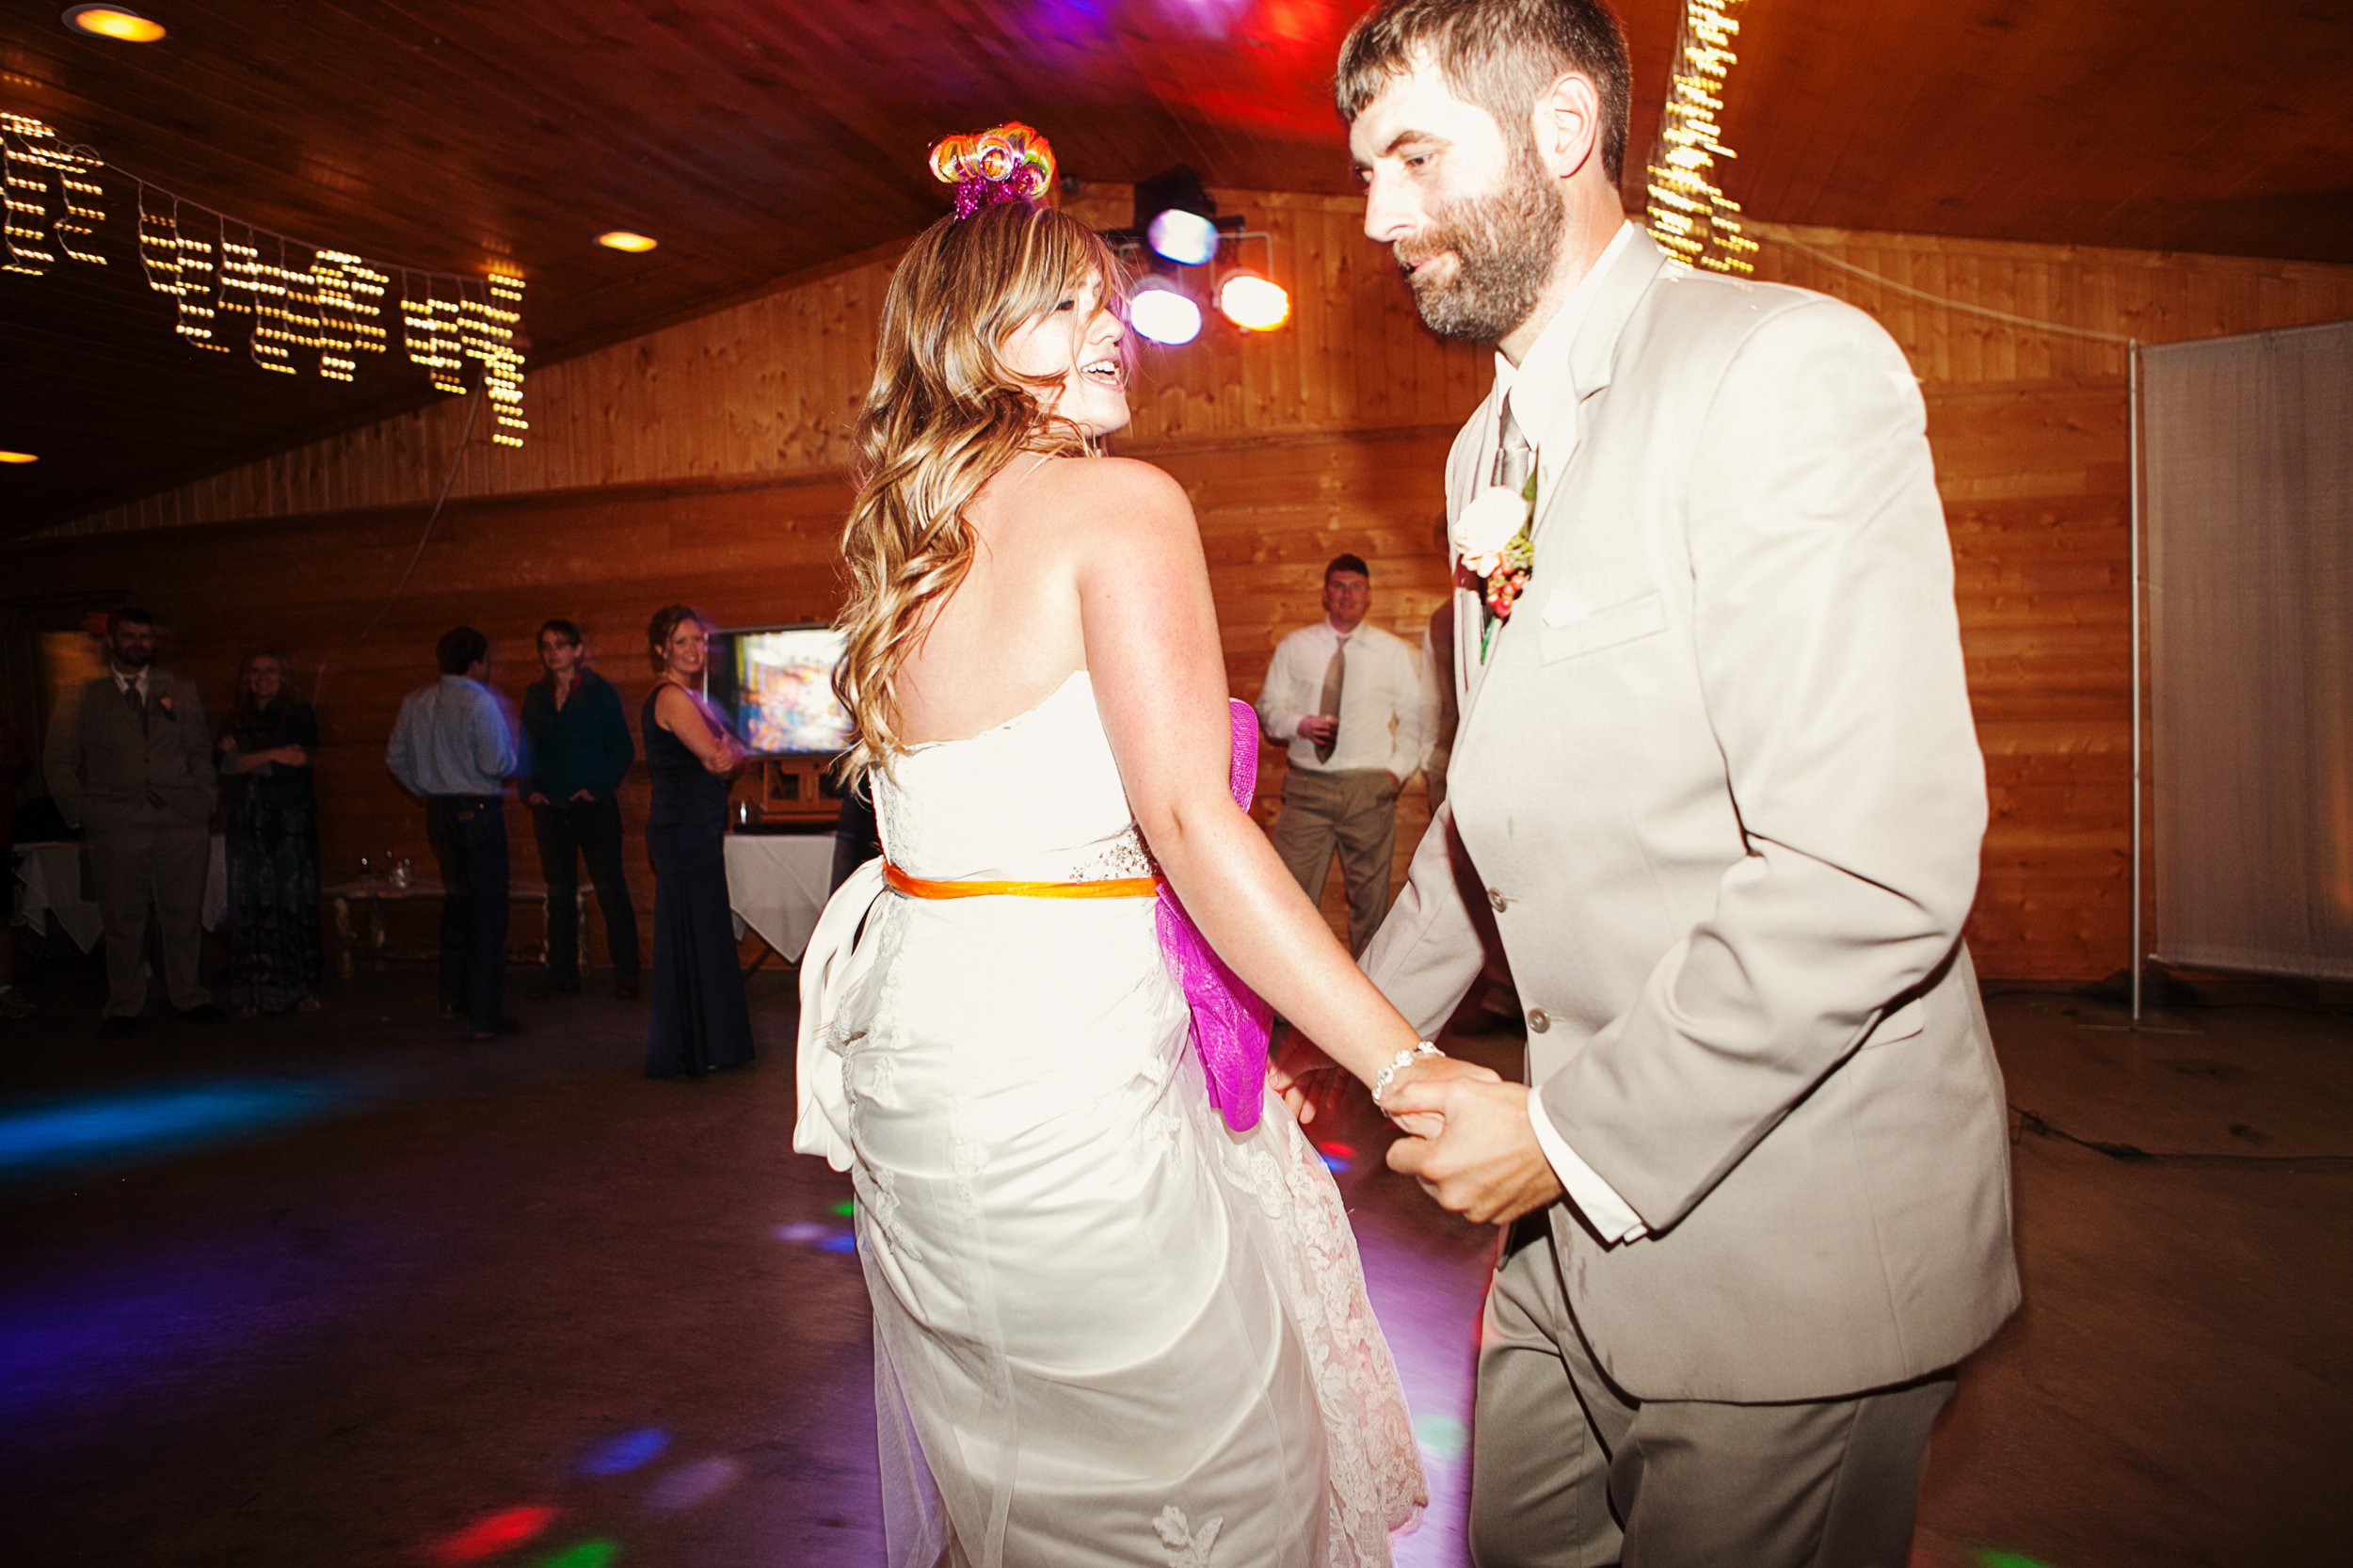 Double Arrow Resort Seeley Lake MT Wedding Photos Couple Dancing